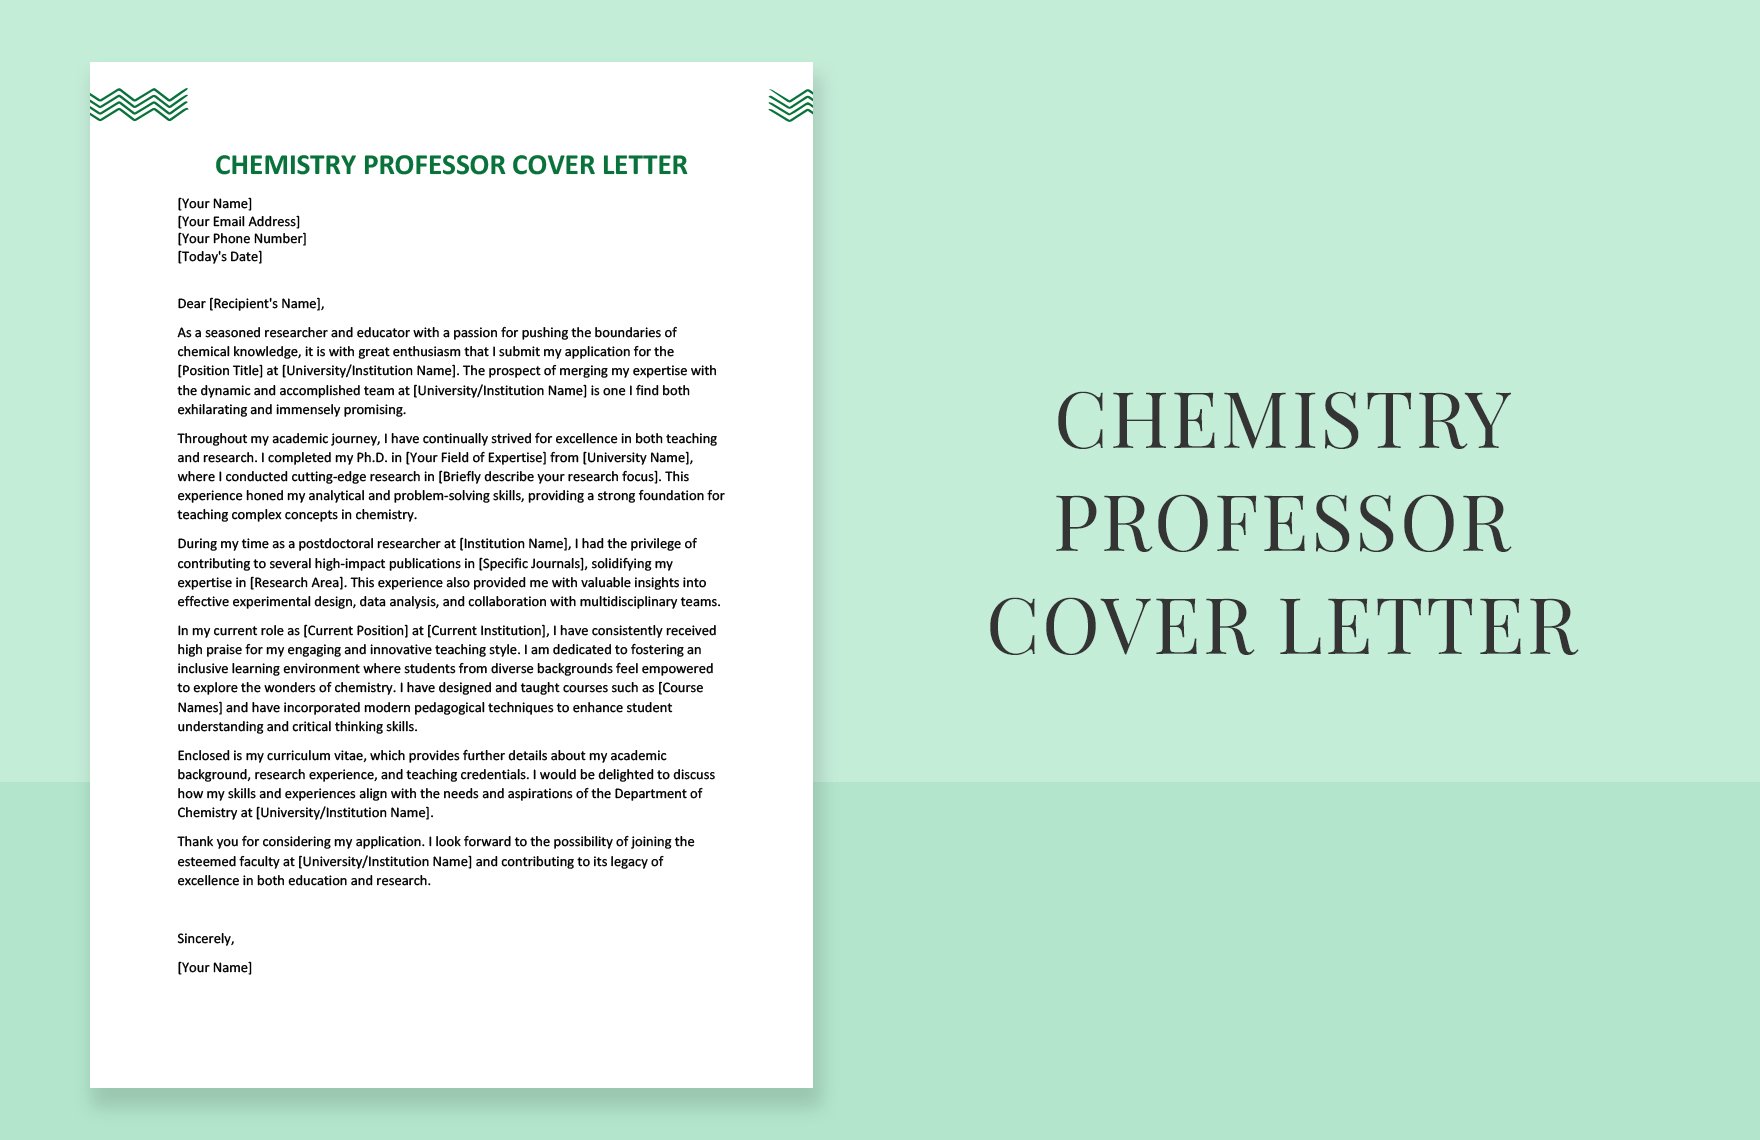 Chemistry Professor Cover Letter